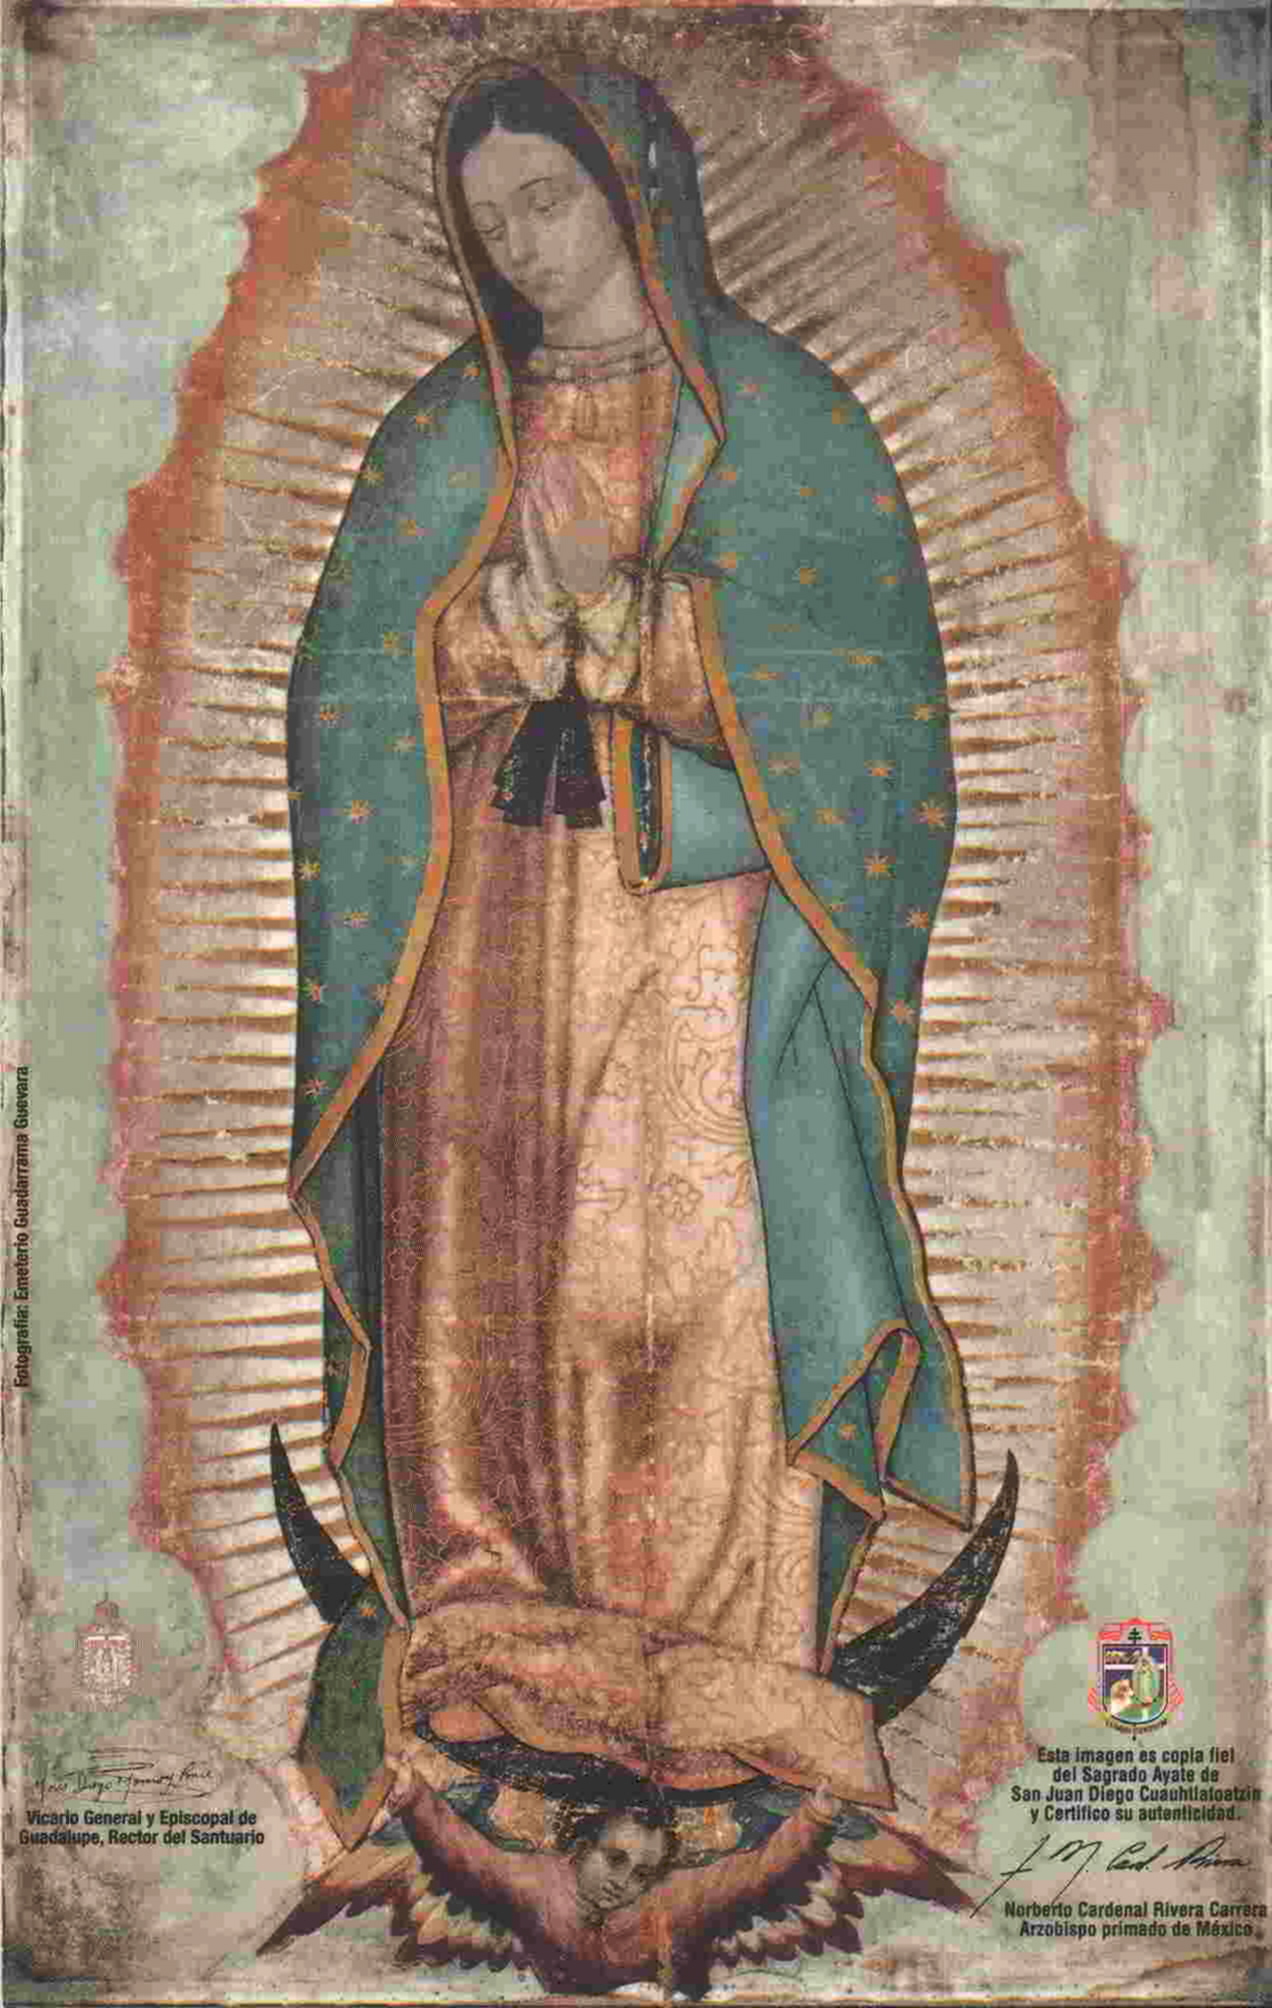 Cudowny wizerunek Matki Bożej z Guadalupe